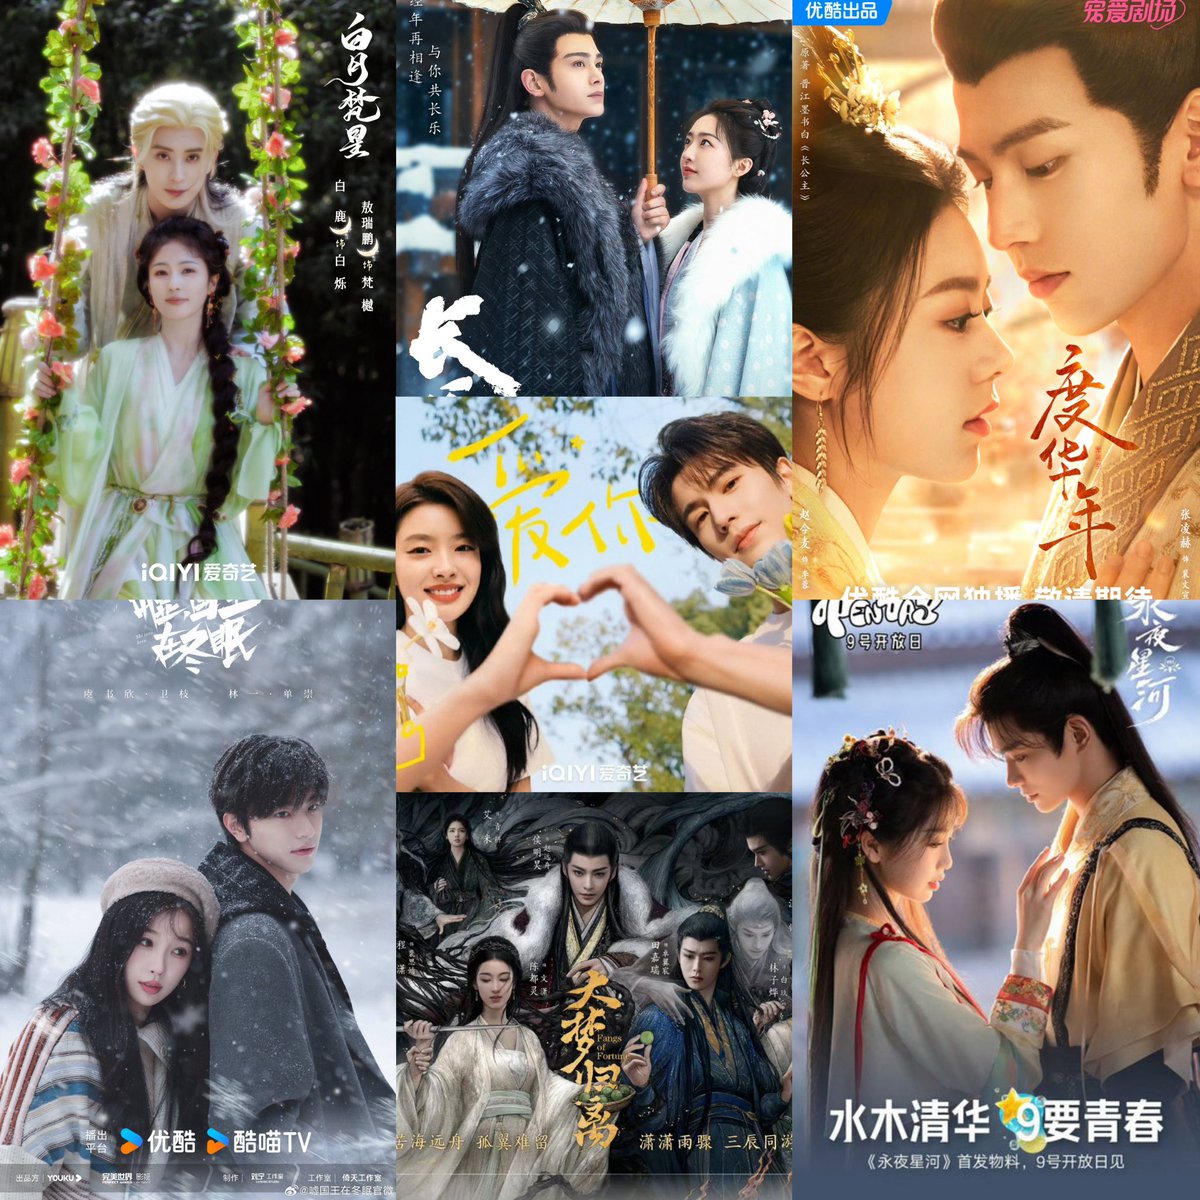 Dramas will have new materials on Chinese Valentine 520

#BaiLu, #AoRuipeng-Moonlight Mystique

#ZhangLinghe, #XuRuohan-The Best Thing

#ZhaoJinmai, #ZhangLinghe-The Princess Royal

#YuShuxin, #DingYuxi-永夜星河

#YuShuxin, #LinYi-Ski Into Love

#DingYuxi, #DengEnxi-长乐曲